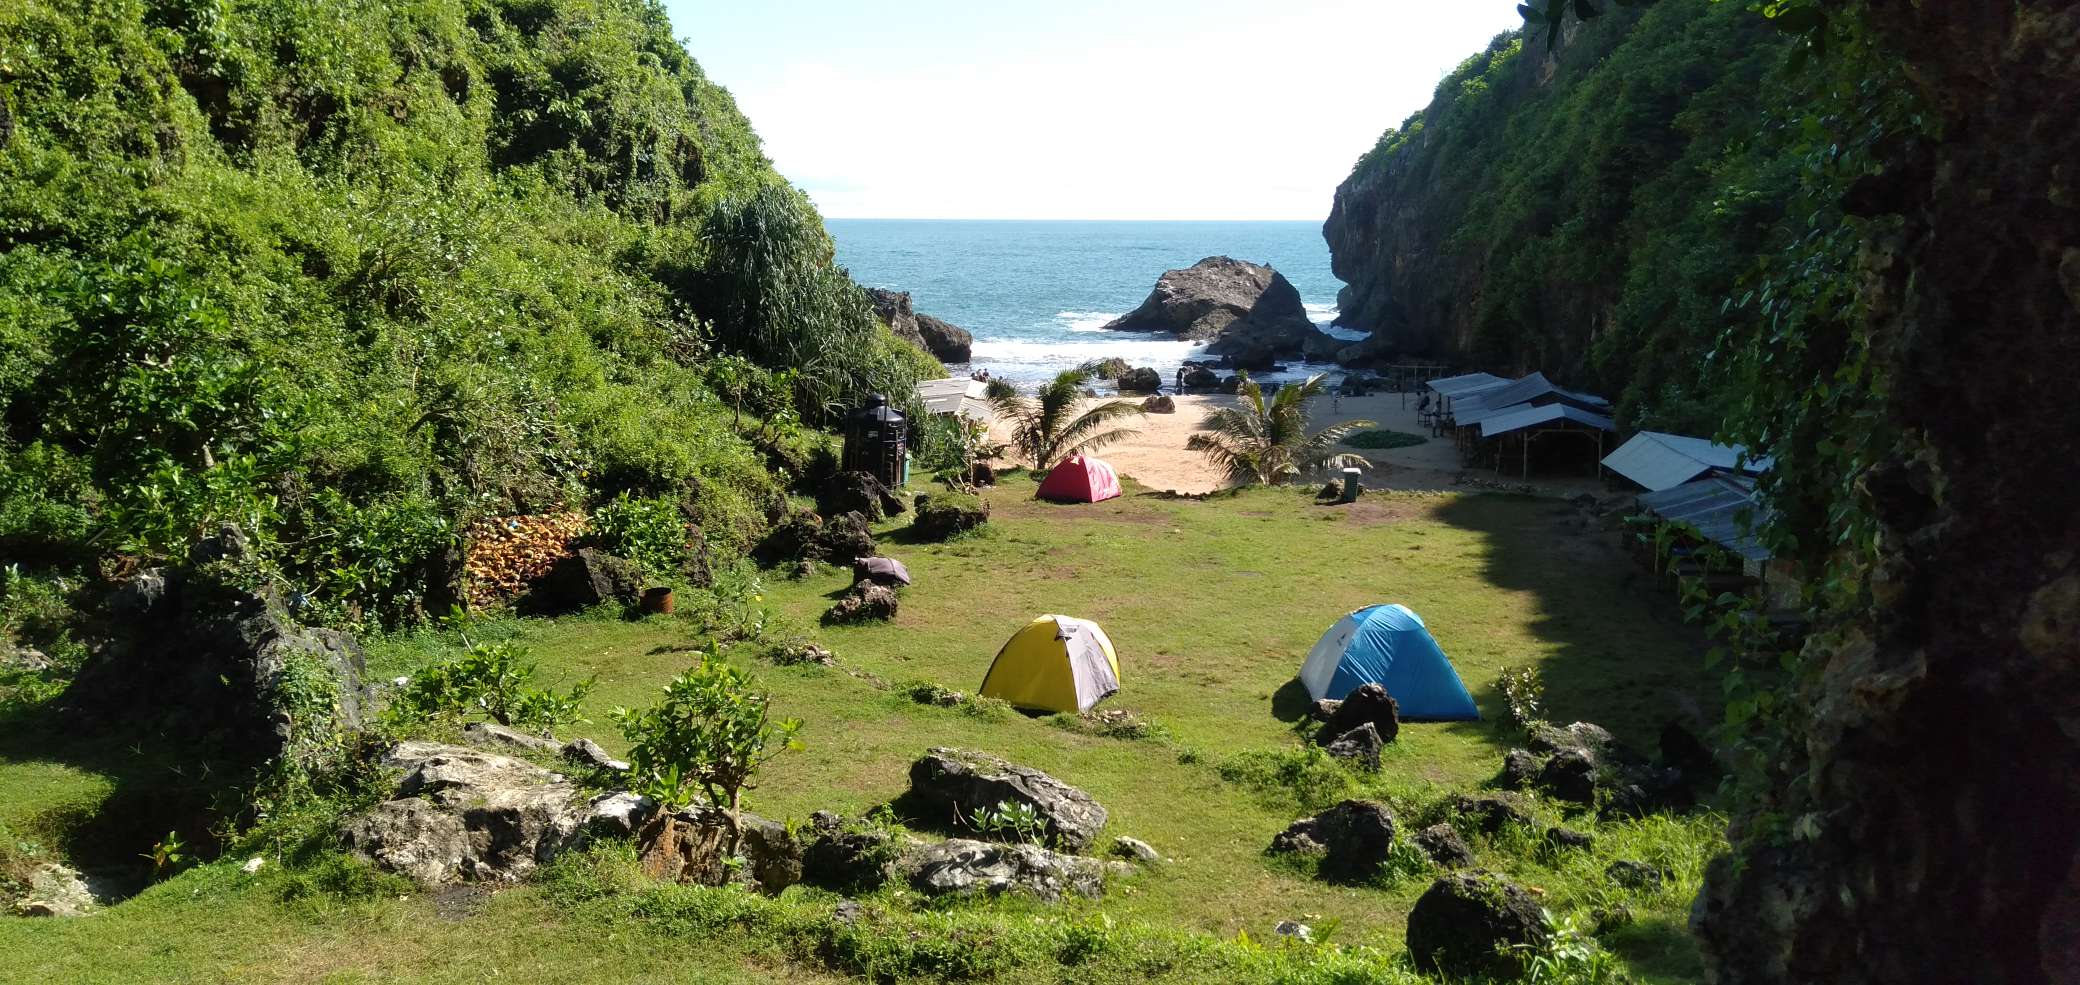 Tempat camping di Pantai Wohkudu, Sumber: pantaingedan.com